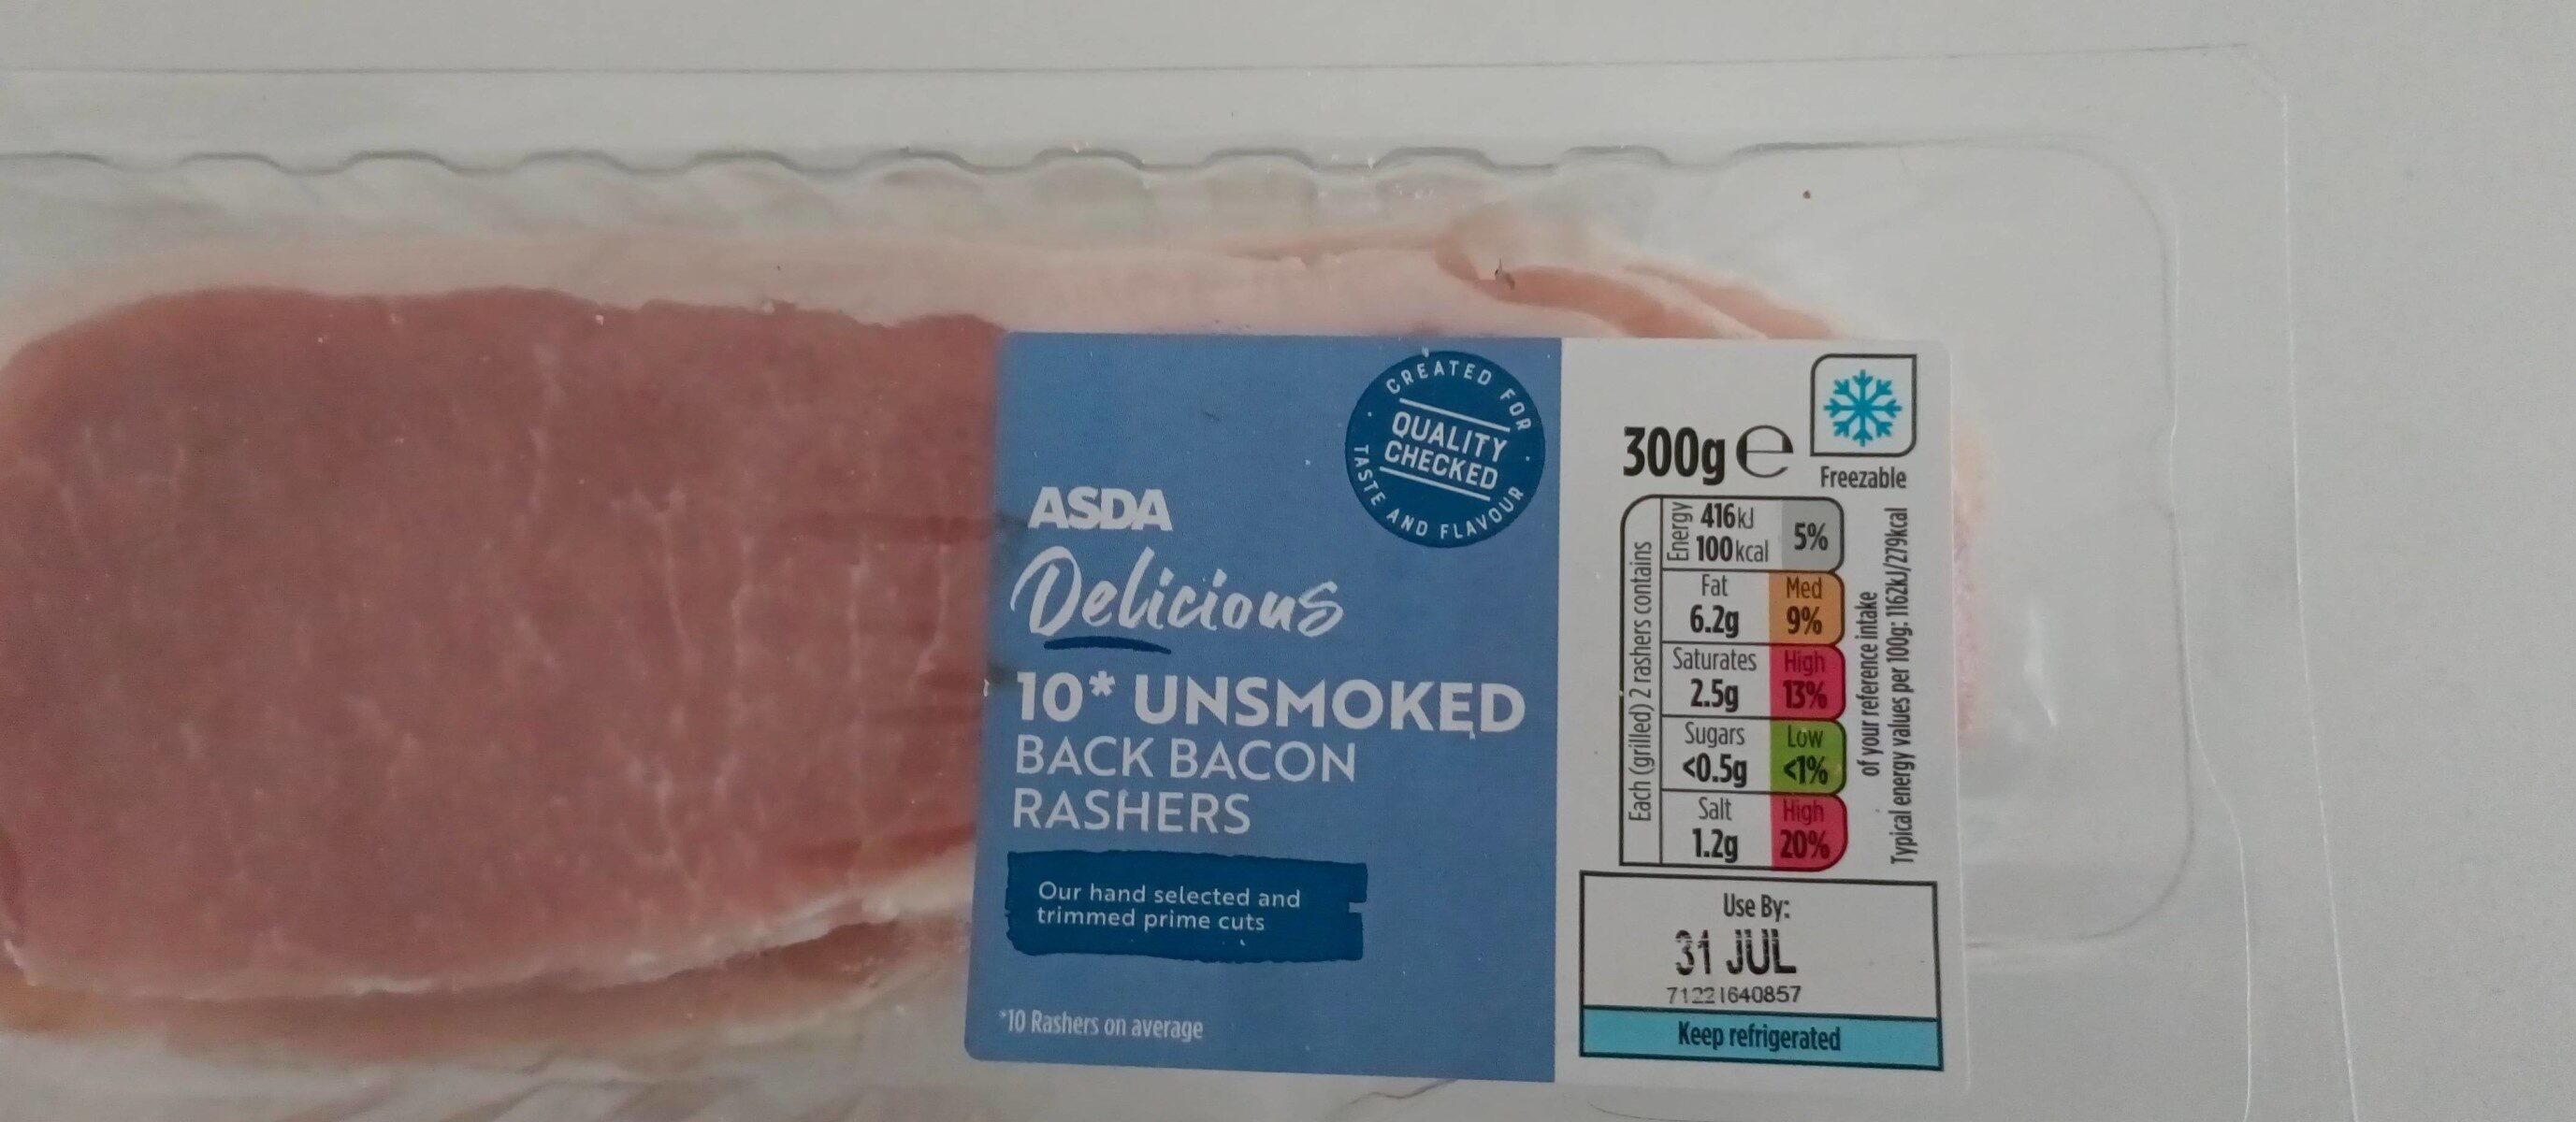 Unsmoked back bacon rashers - Product